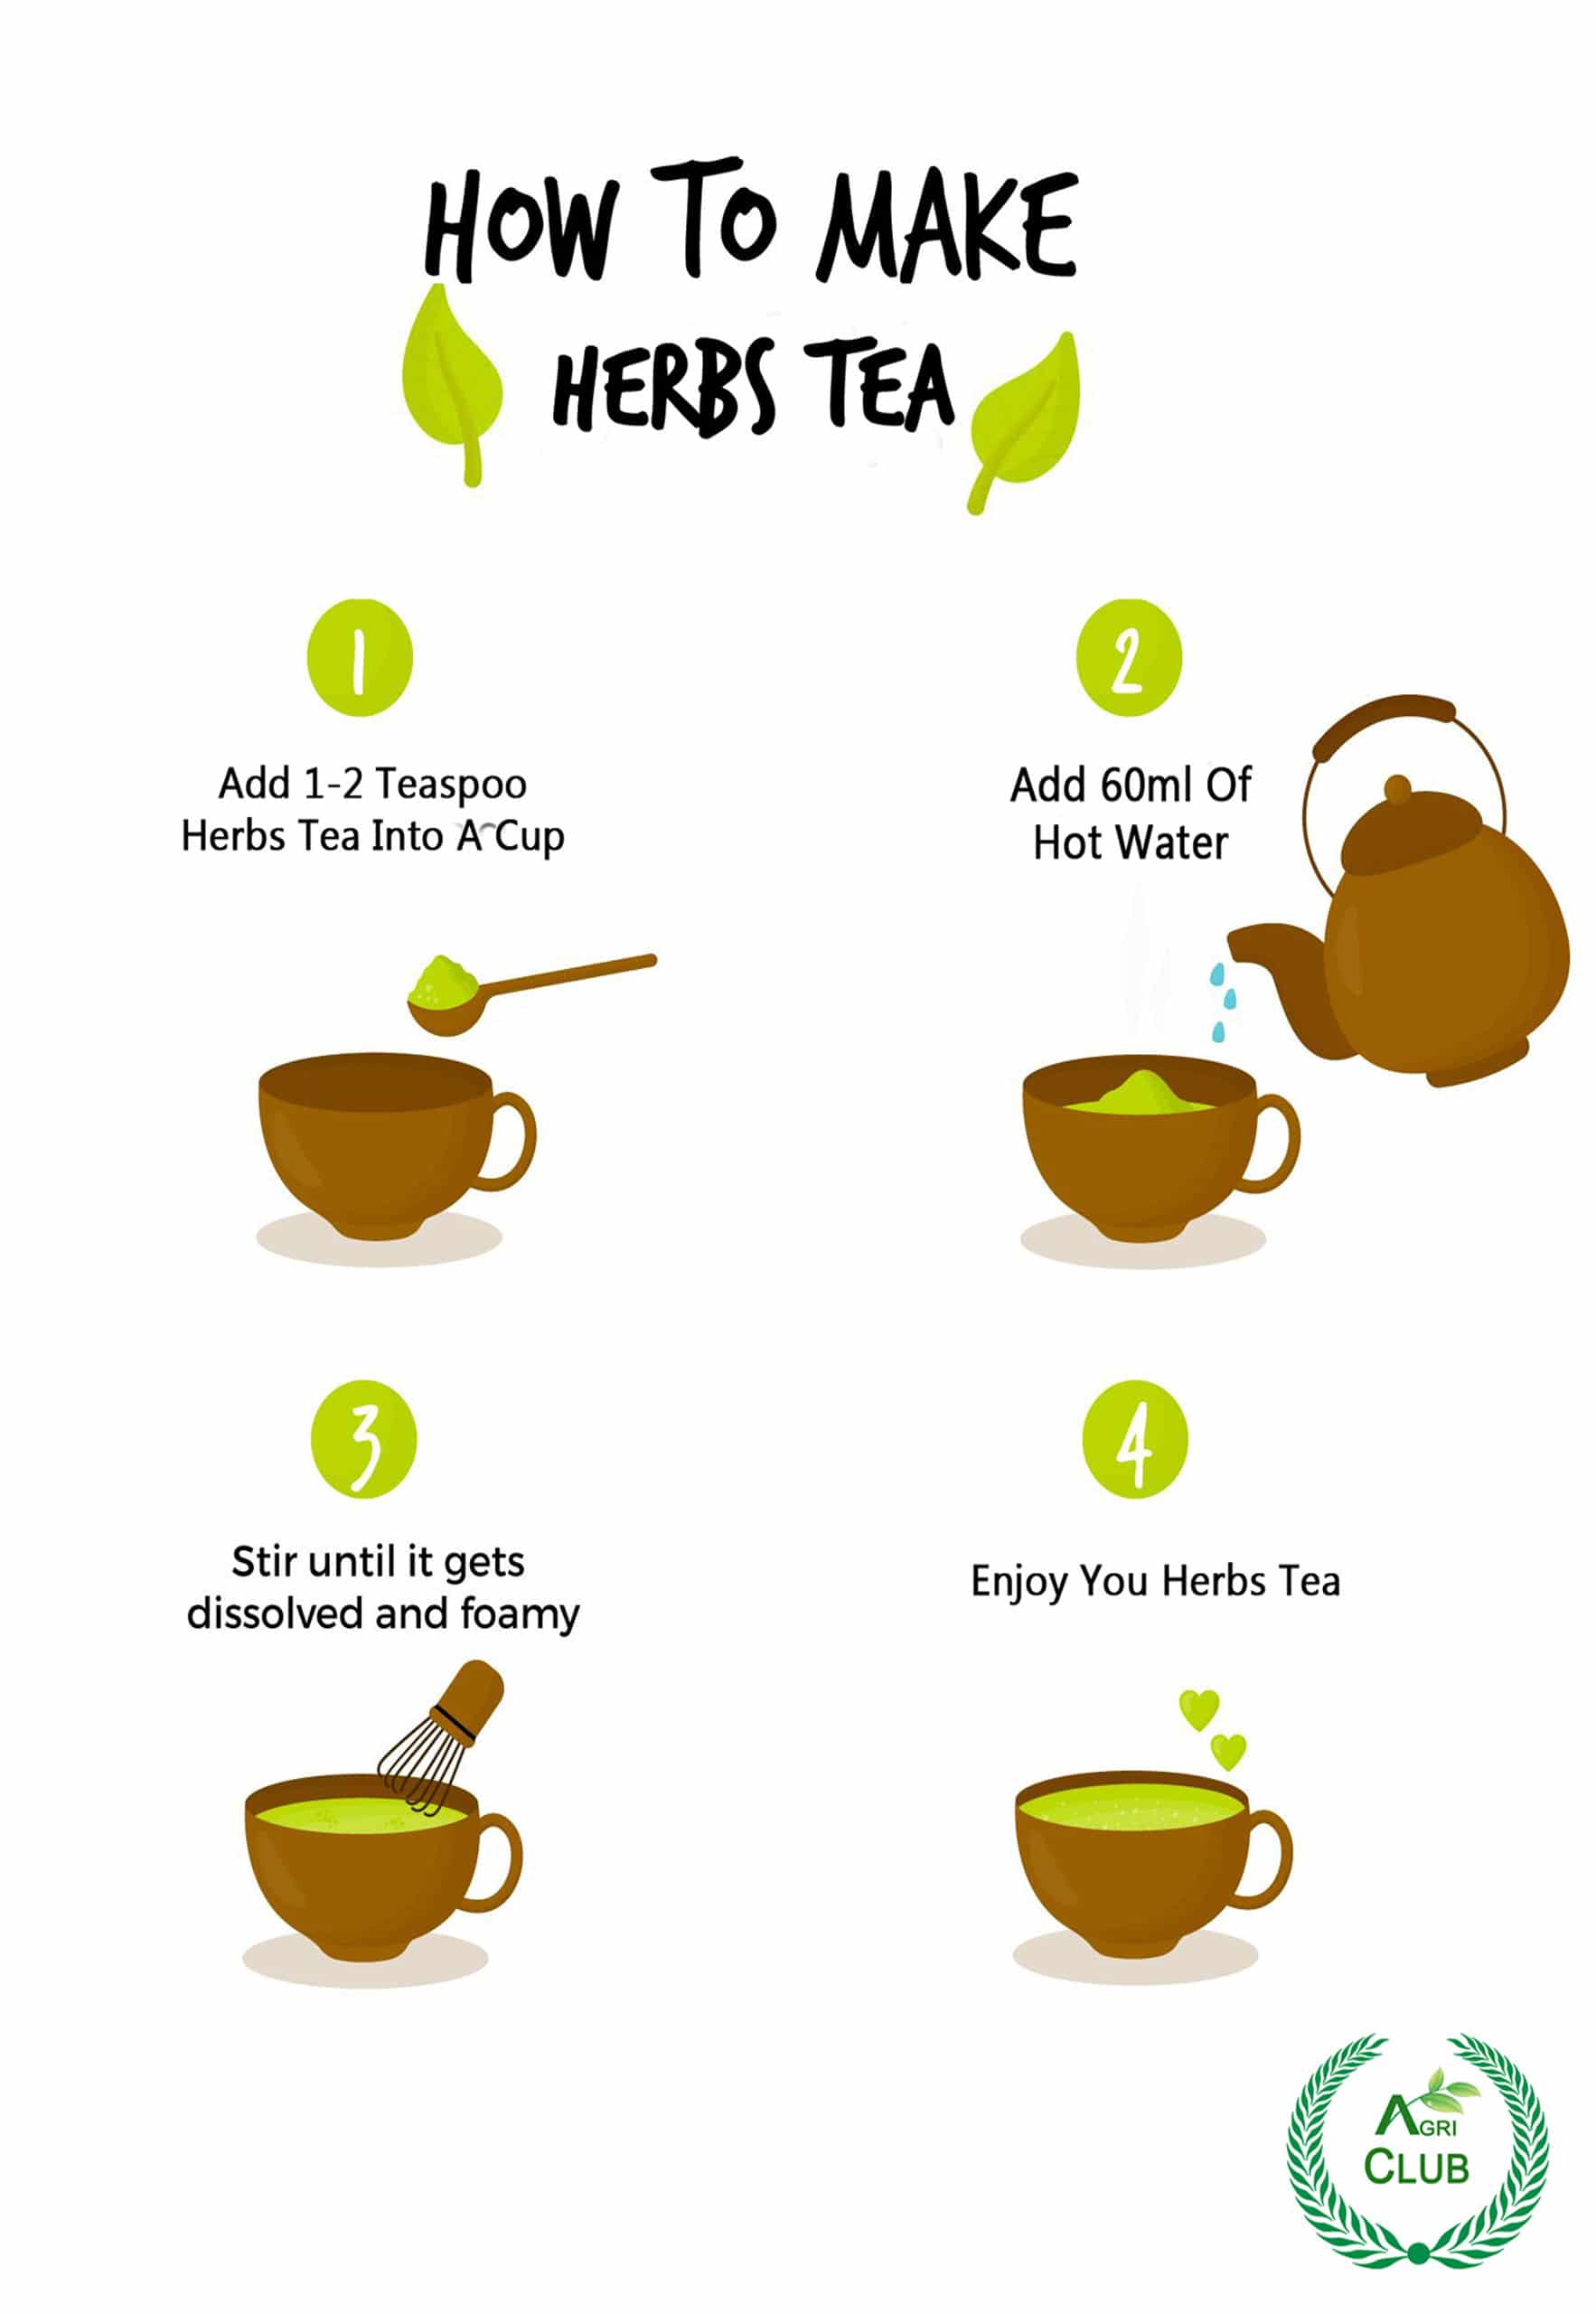 Herbs Tea Moringa + Nettle + Lemongrass 50 GM